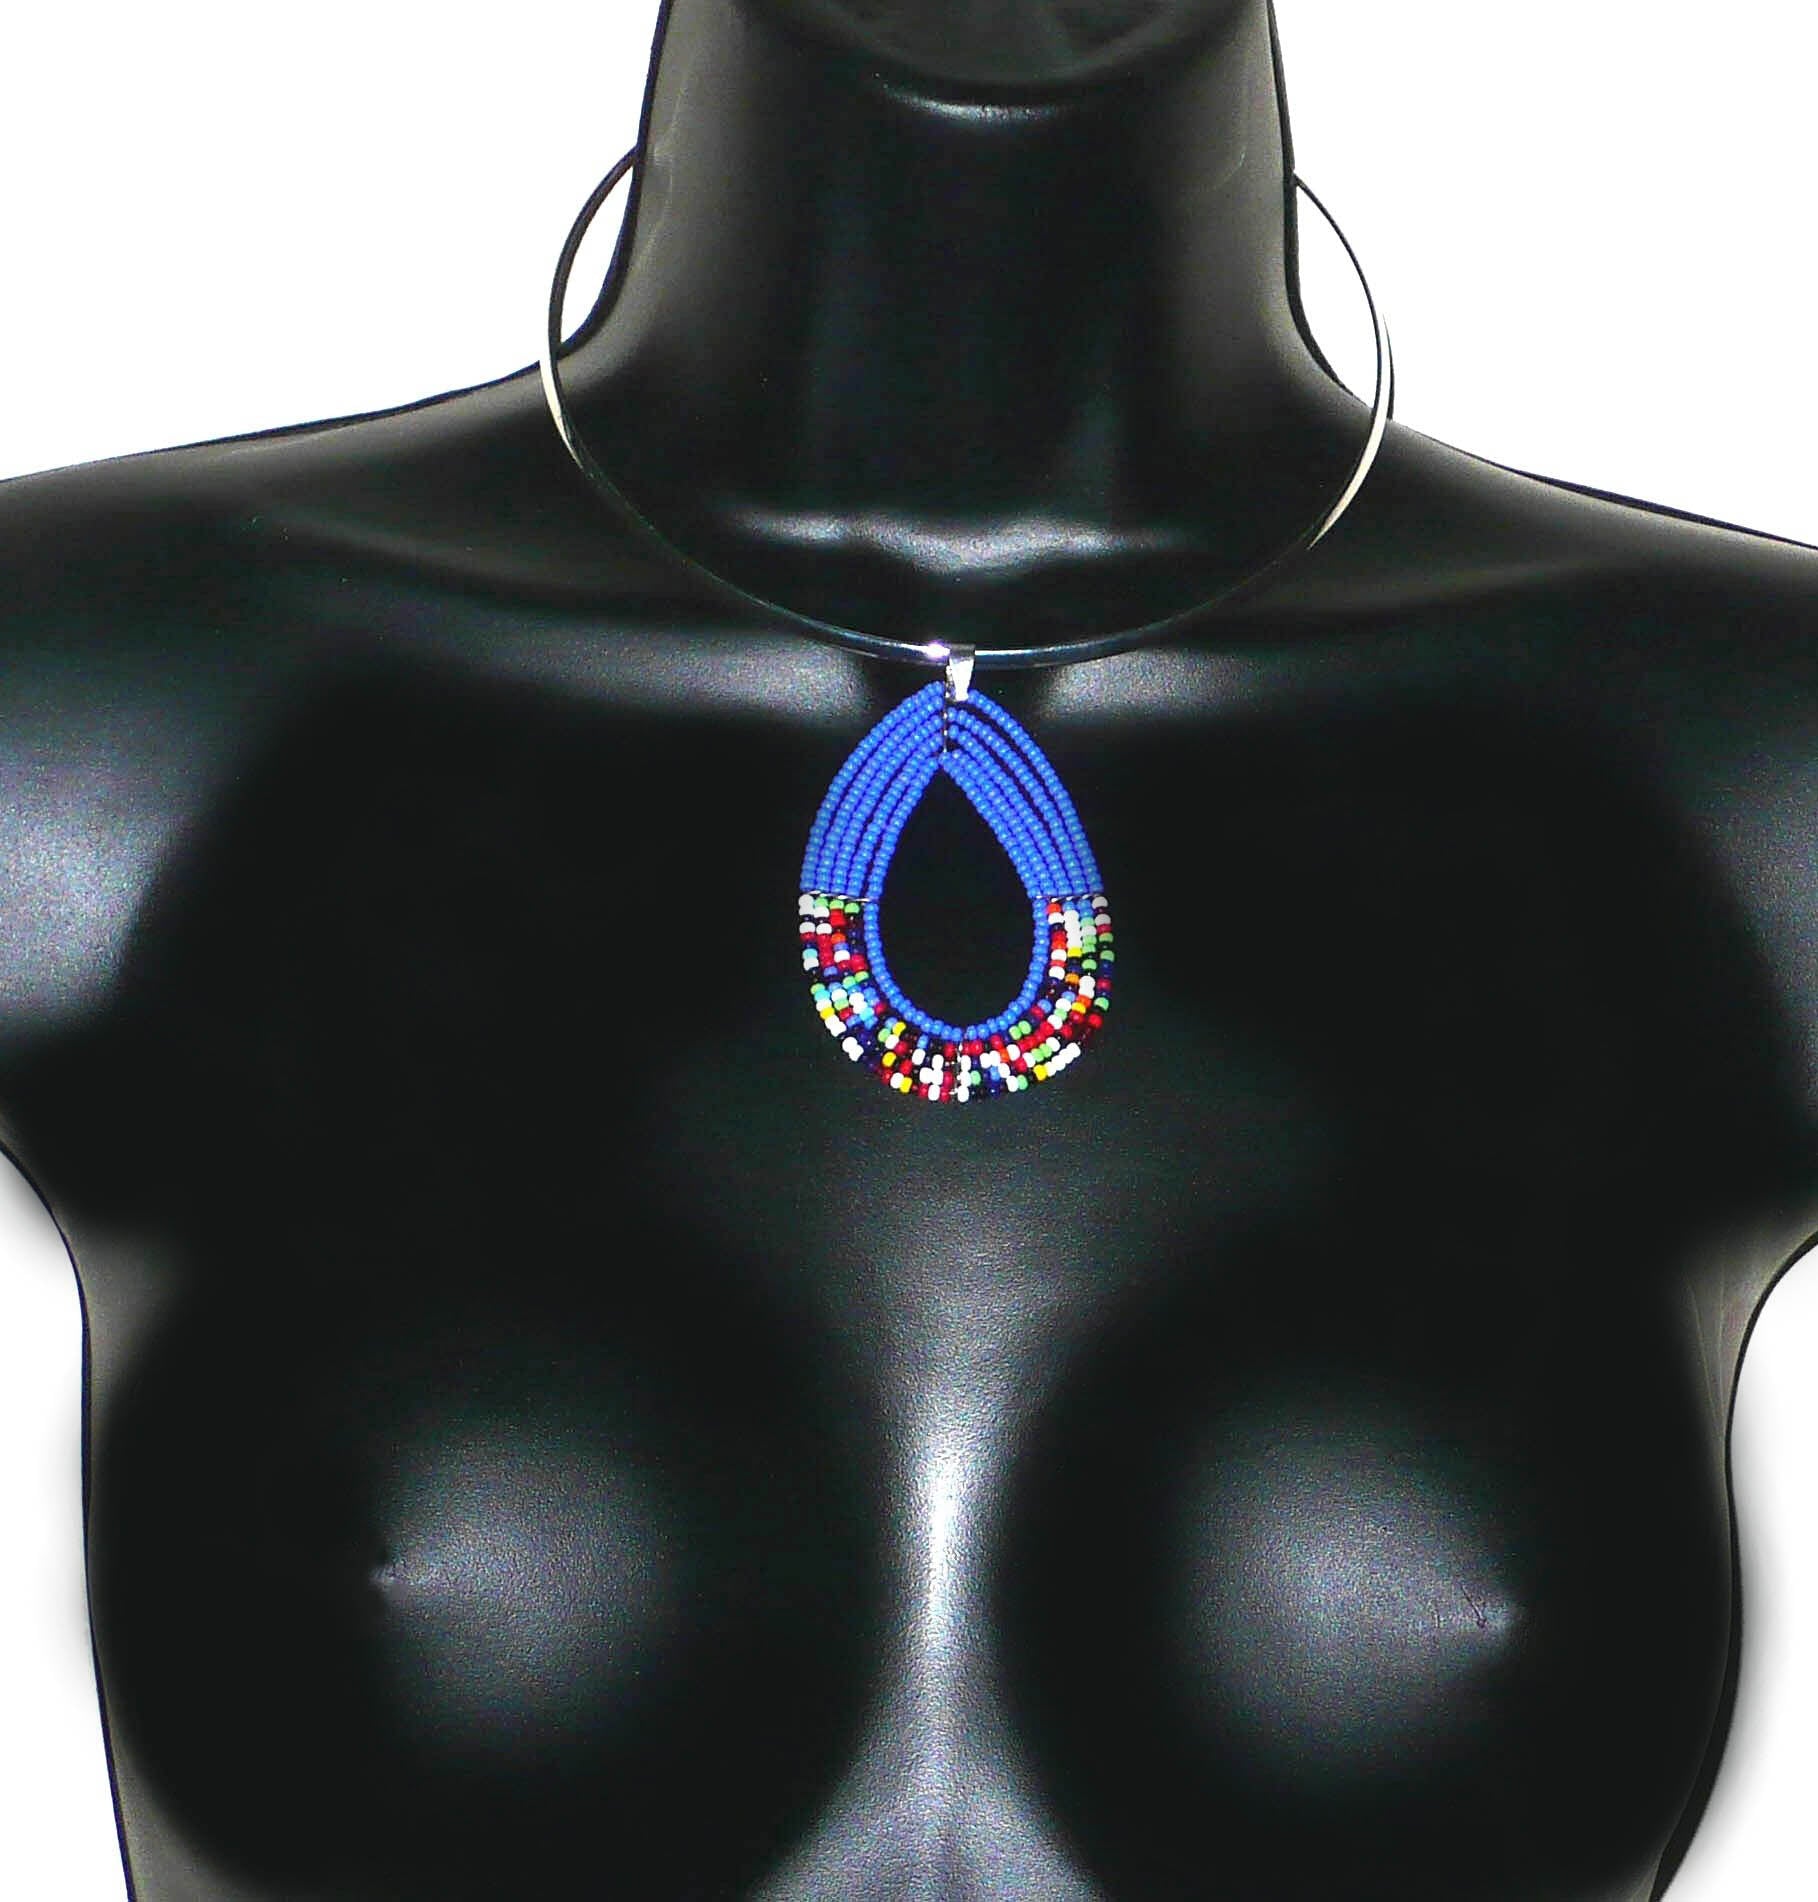 Collier ras de cou en laiton argenté orné d'un long pendentif fait de perles de rocaille bleues et multicolores enfilées sur cinq rangées de fils de fer montés en goutte. Ce collier mesure 21 cm de long, la circonférence du tour de cou en laiton est de 4é,5 cm pour un diamètre de 13,5 cm ; le pendentif perlé mesure 7 cm de long et 4,5 cm de large.